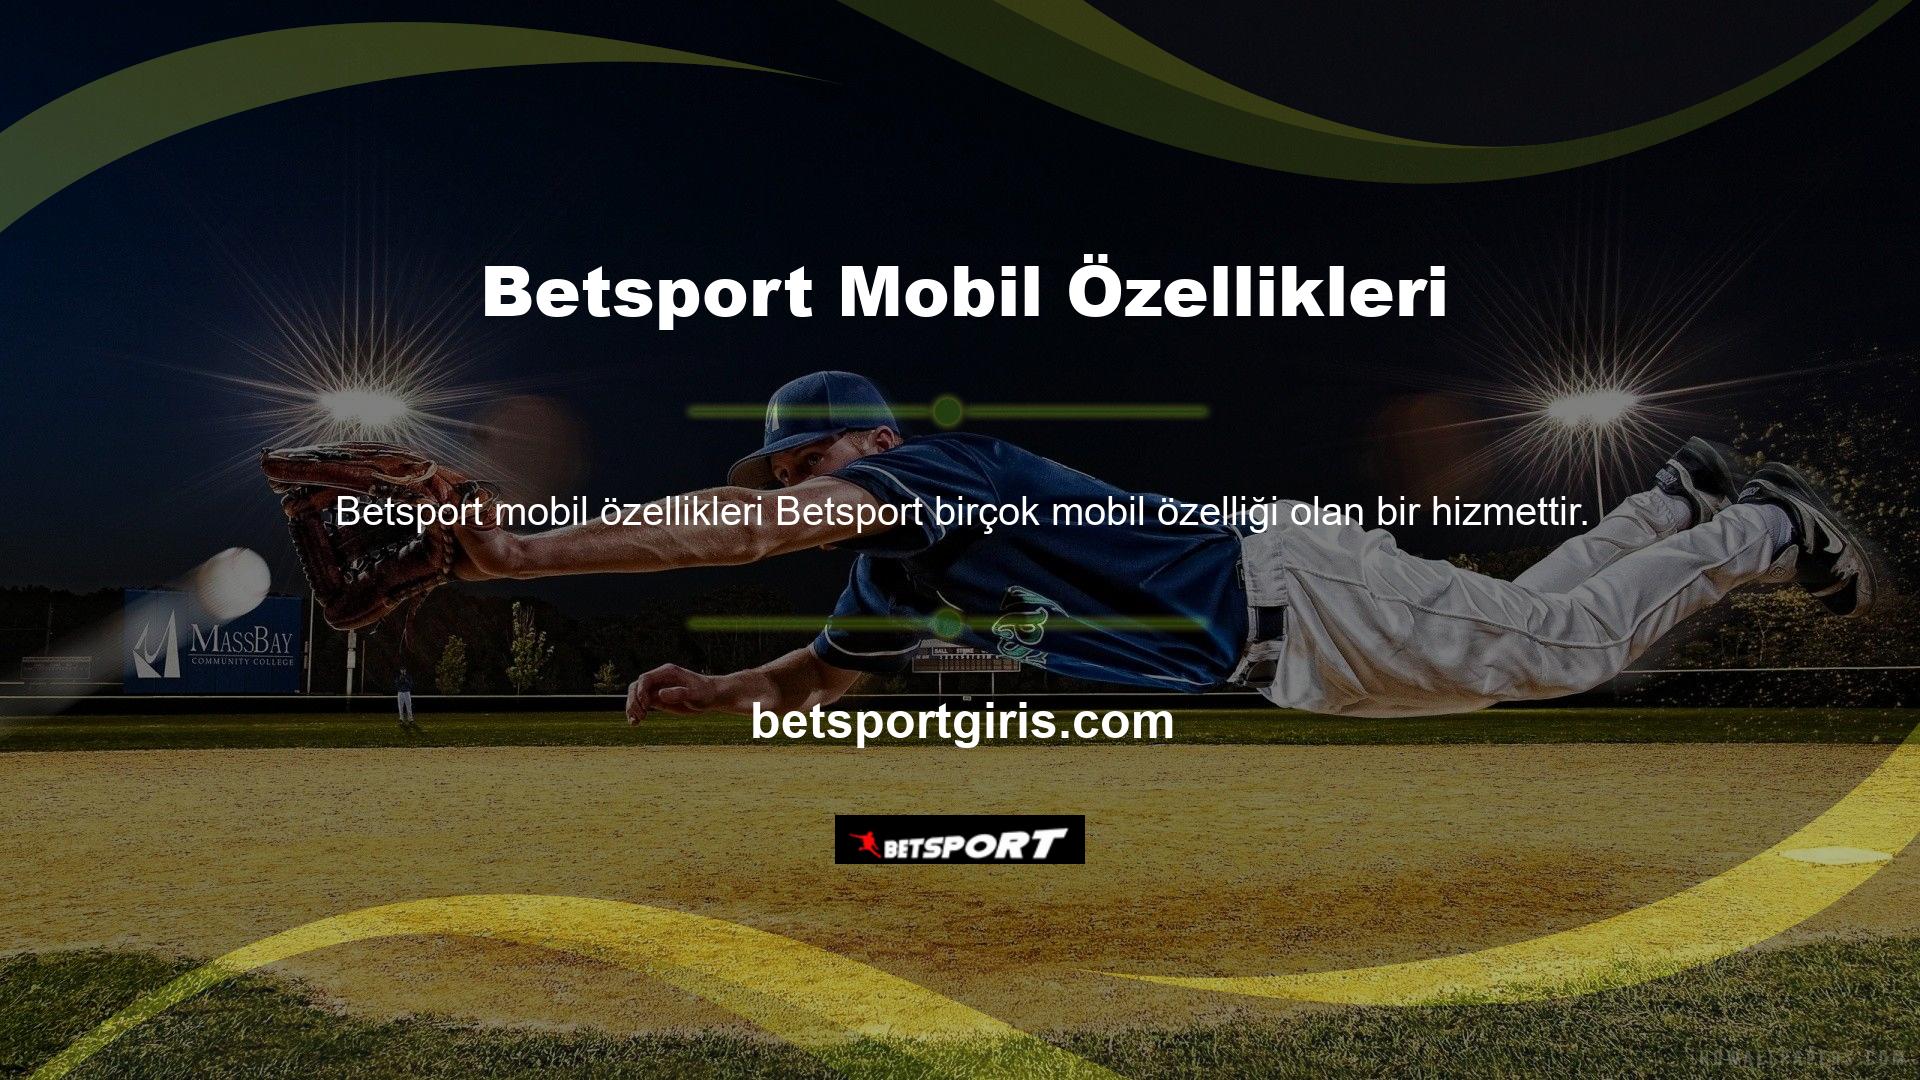 Bahisçilerin en büyük isteklerinden biri olan mobil uygulama gerekli alt yapıyı sağlamış ve Betsport ana sayfasını tanıtmıştır